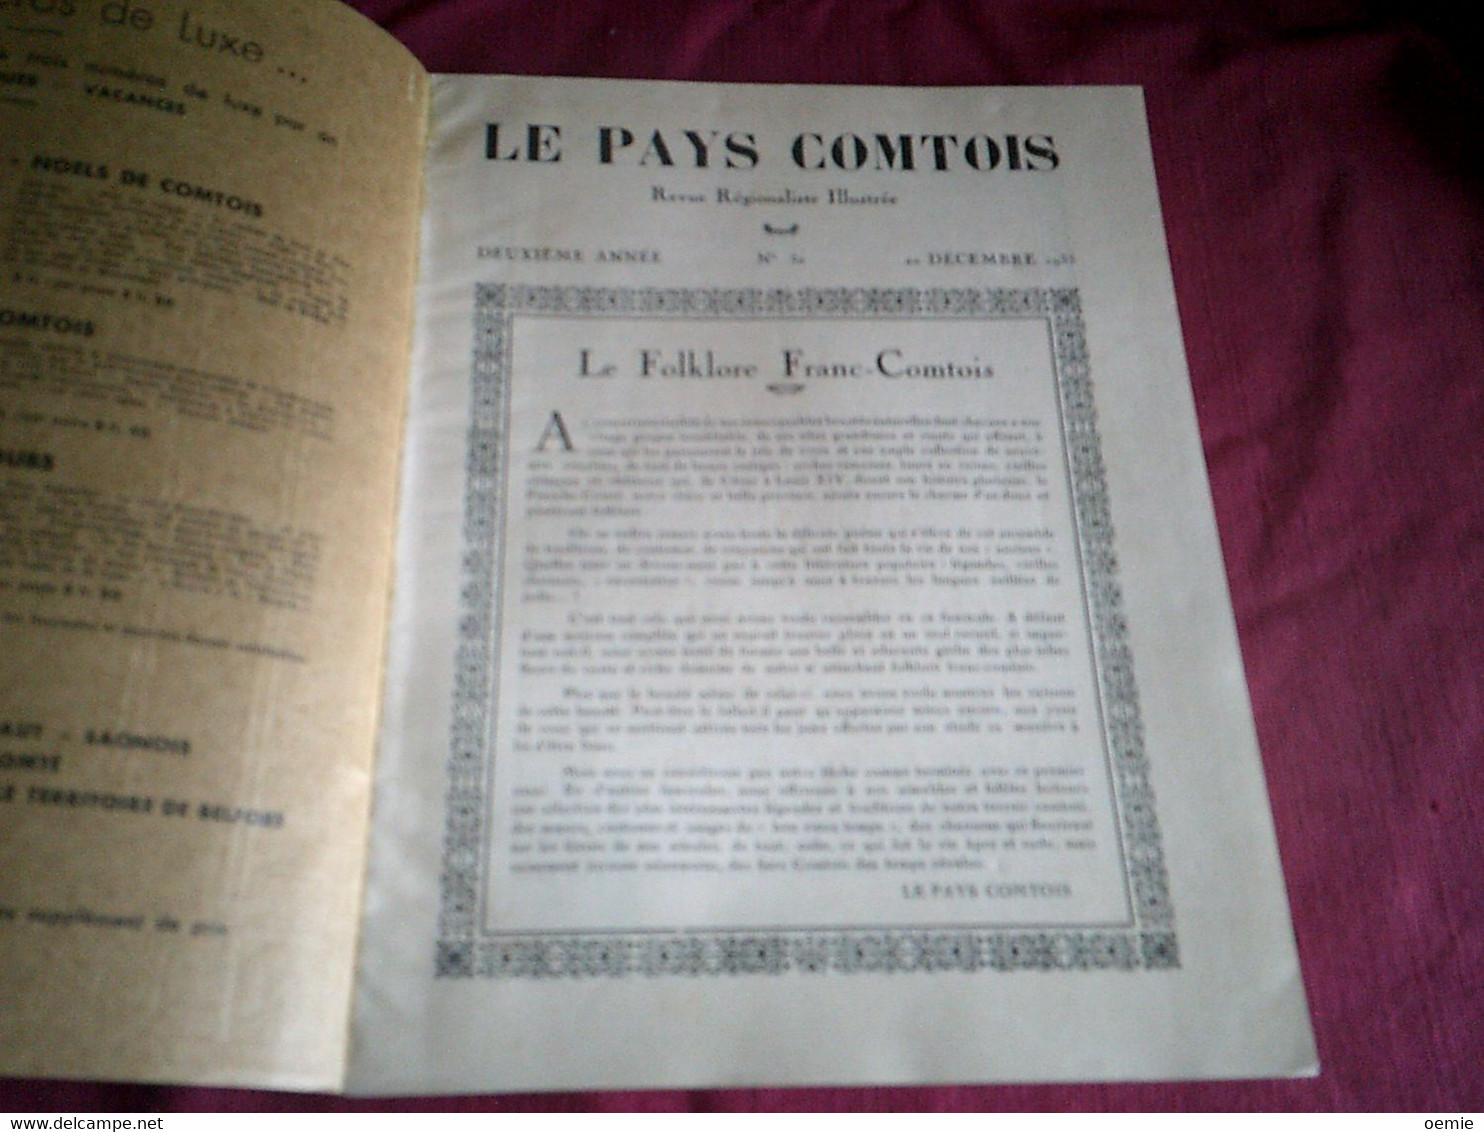 LE PAYS COMTOIS / LE FOLKLORE FRANC COMTOIS - Franche-Comté